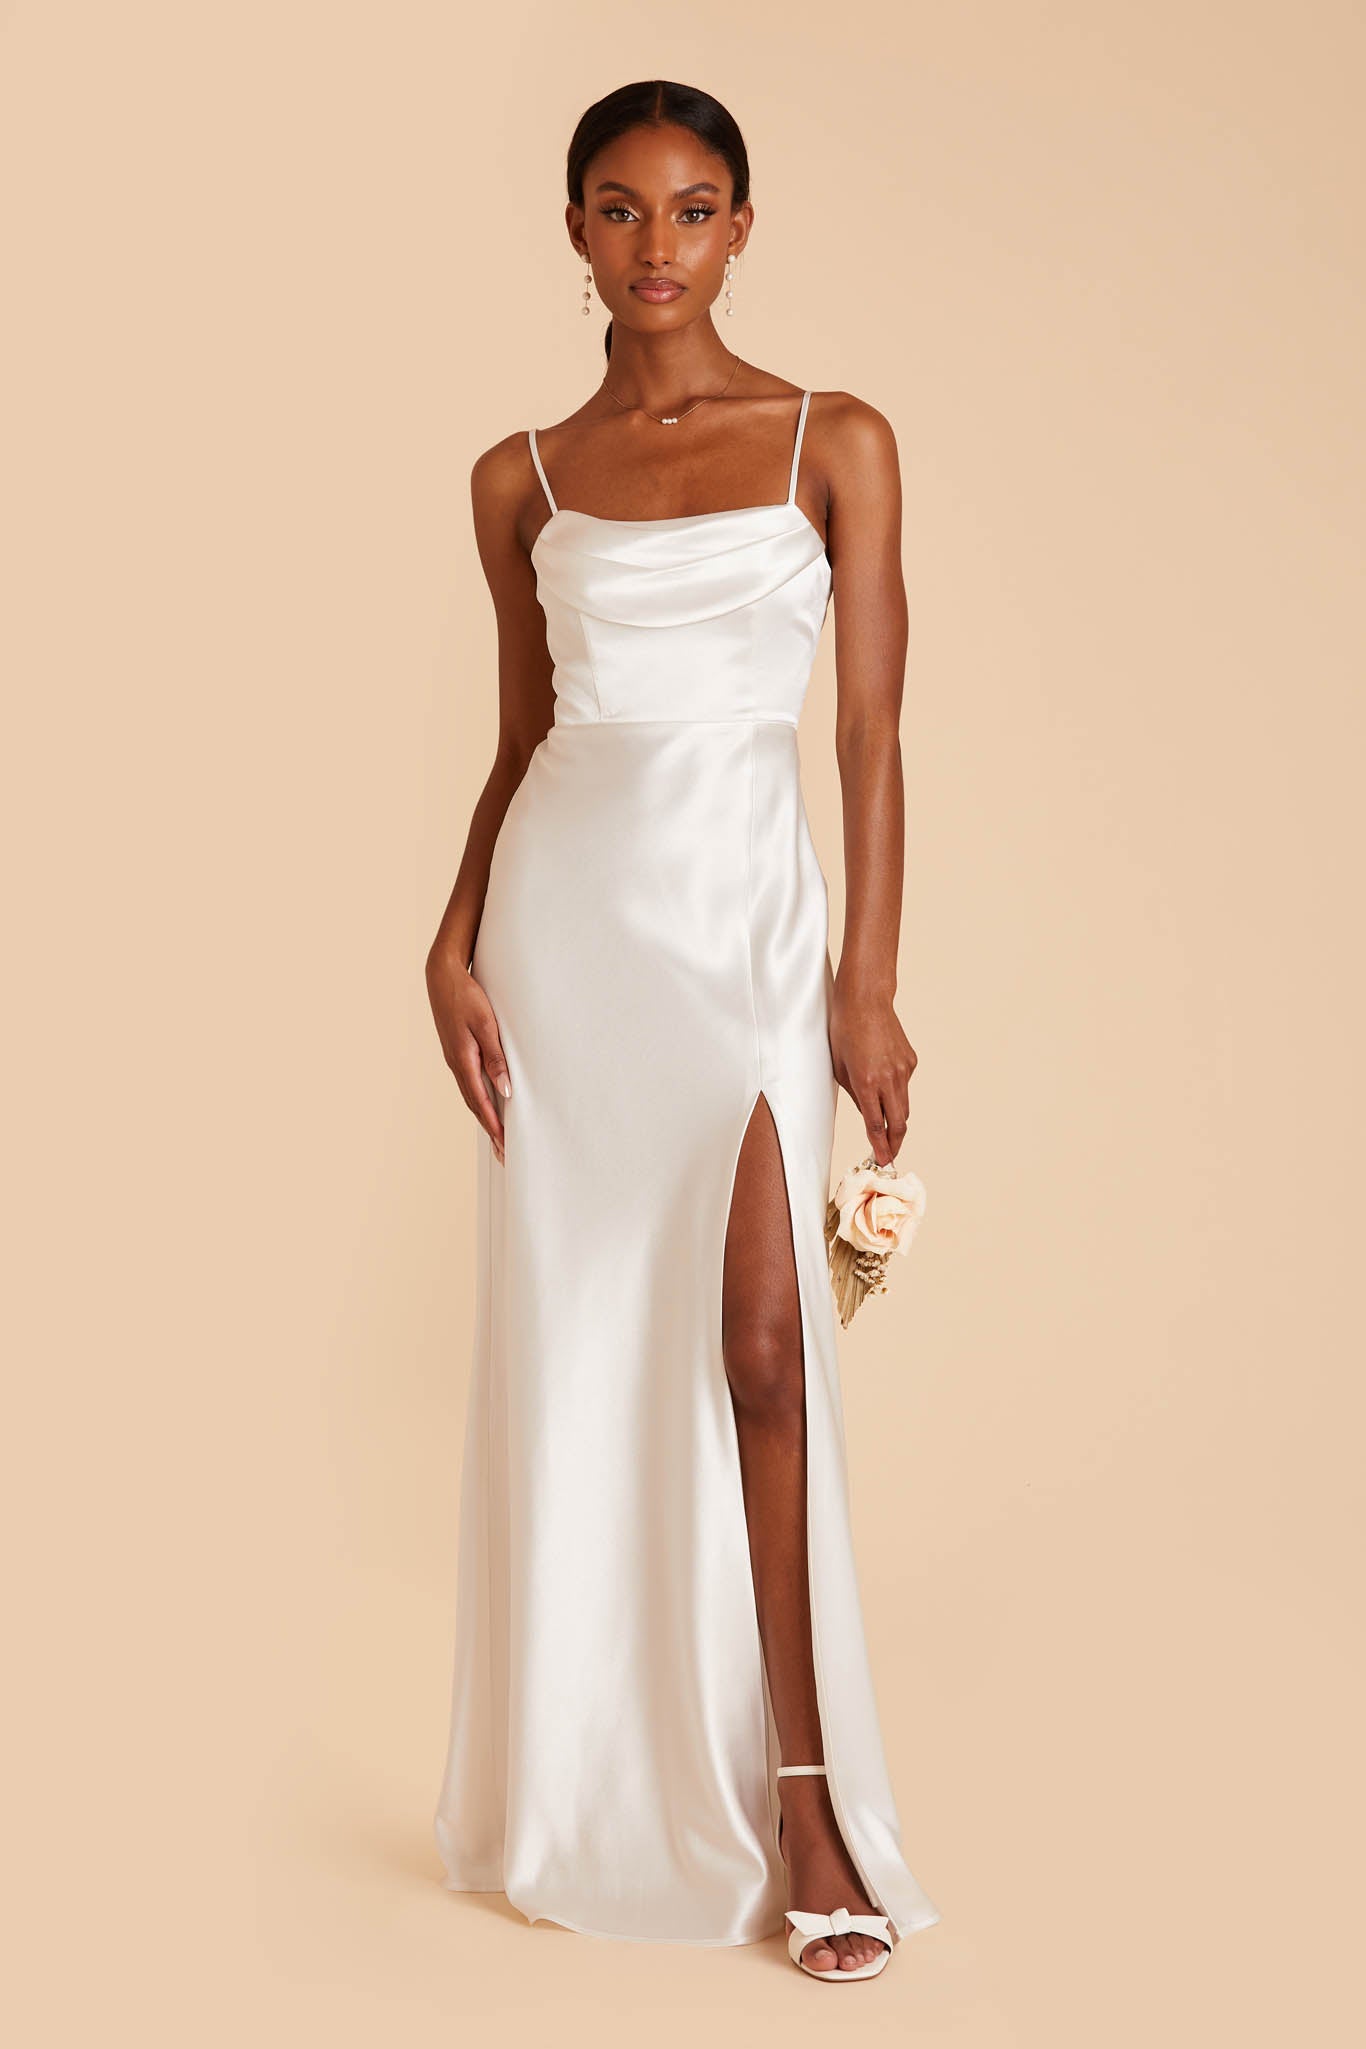 Women's side slit elegant white satin full sleeve wedding gown